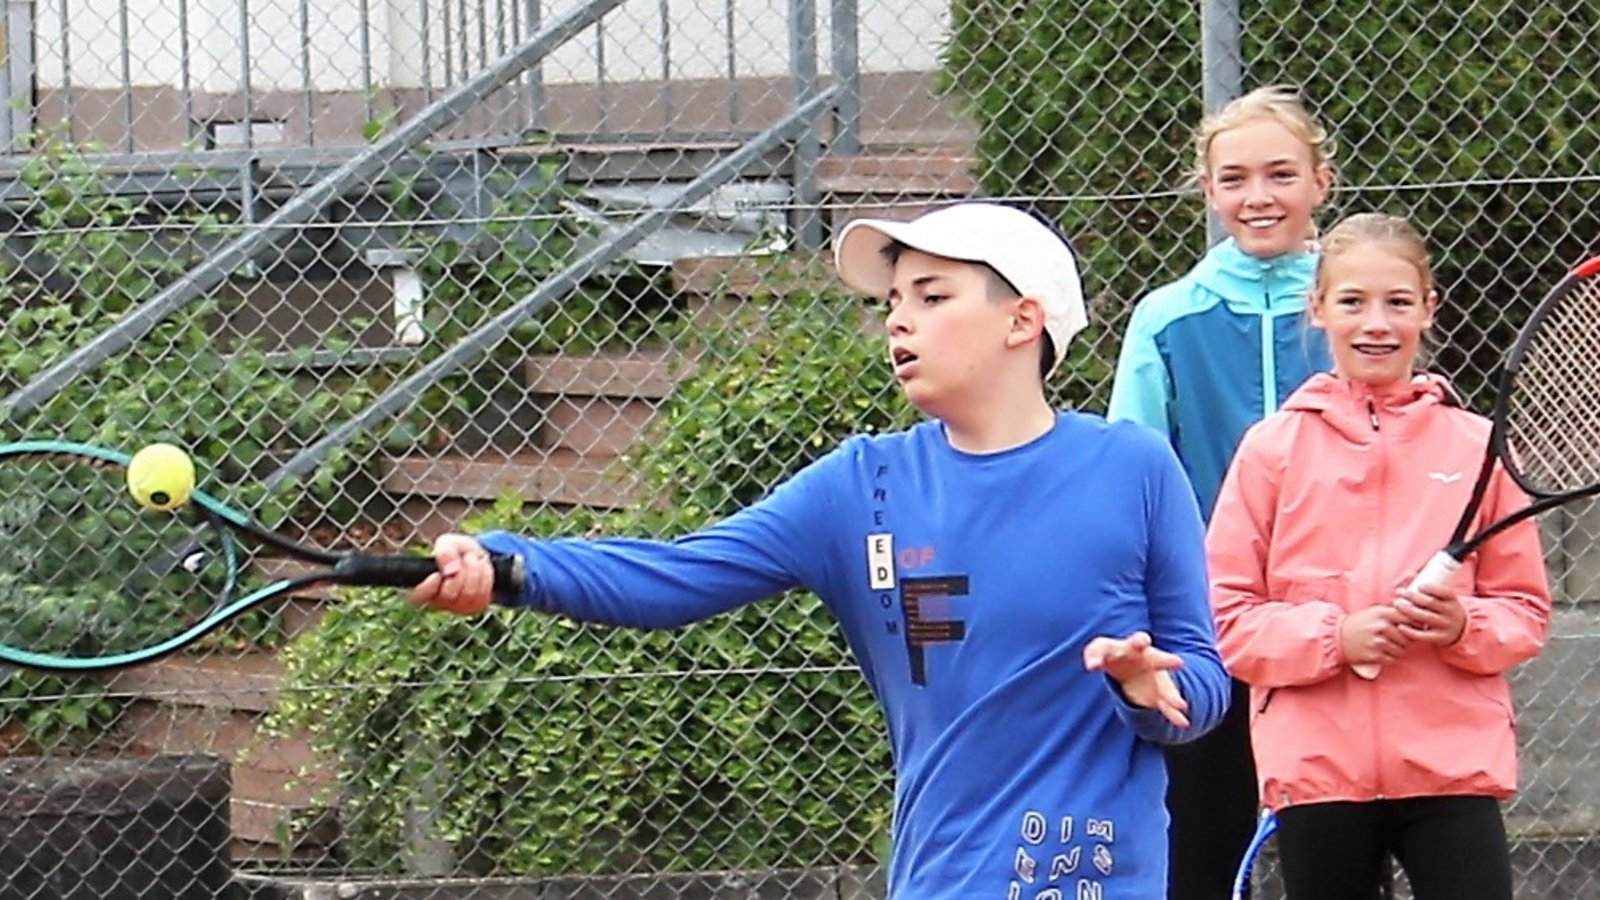 Spaß am Ball: Spielerisch wird der Nachwuchs beim TSV an Tennis herangeführt. Foto: Küppers